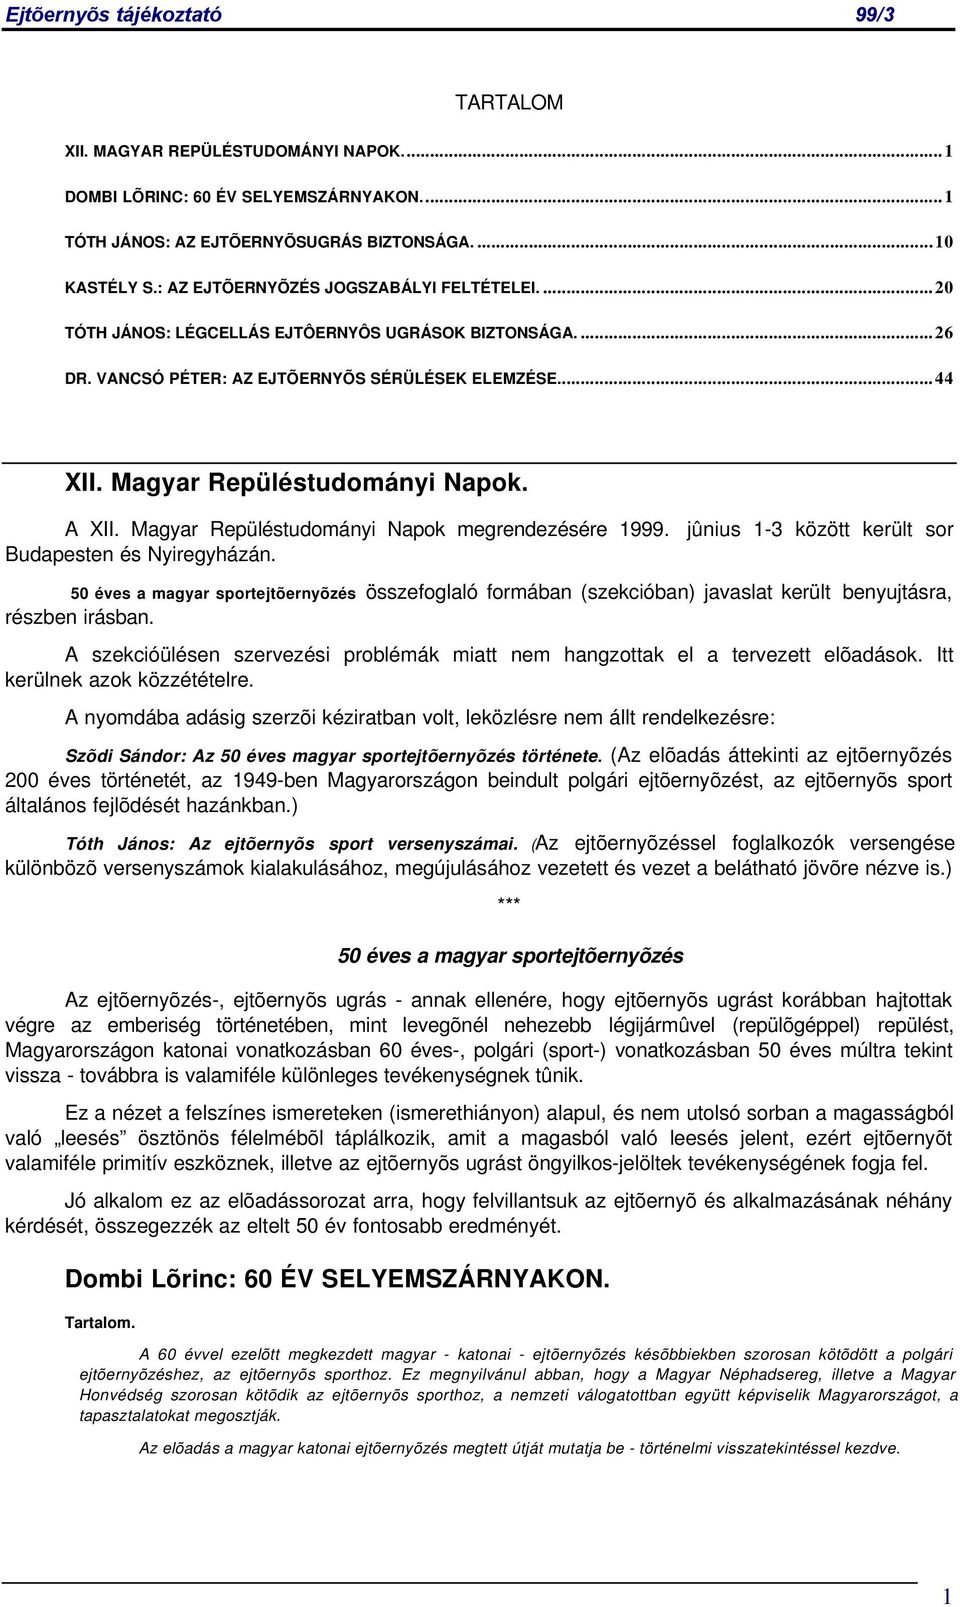 Magyar Repüléstudományi Napok megrendezésére 1999. jûnius 1-3 között került sor Budapesten és Nyiregyházán.